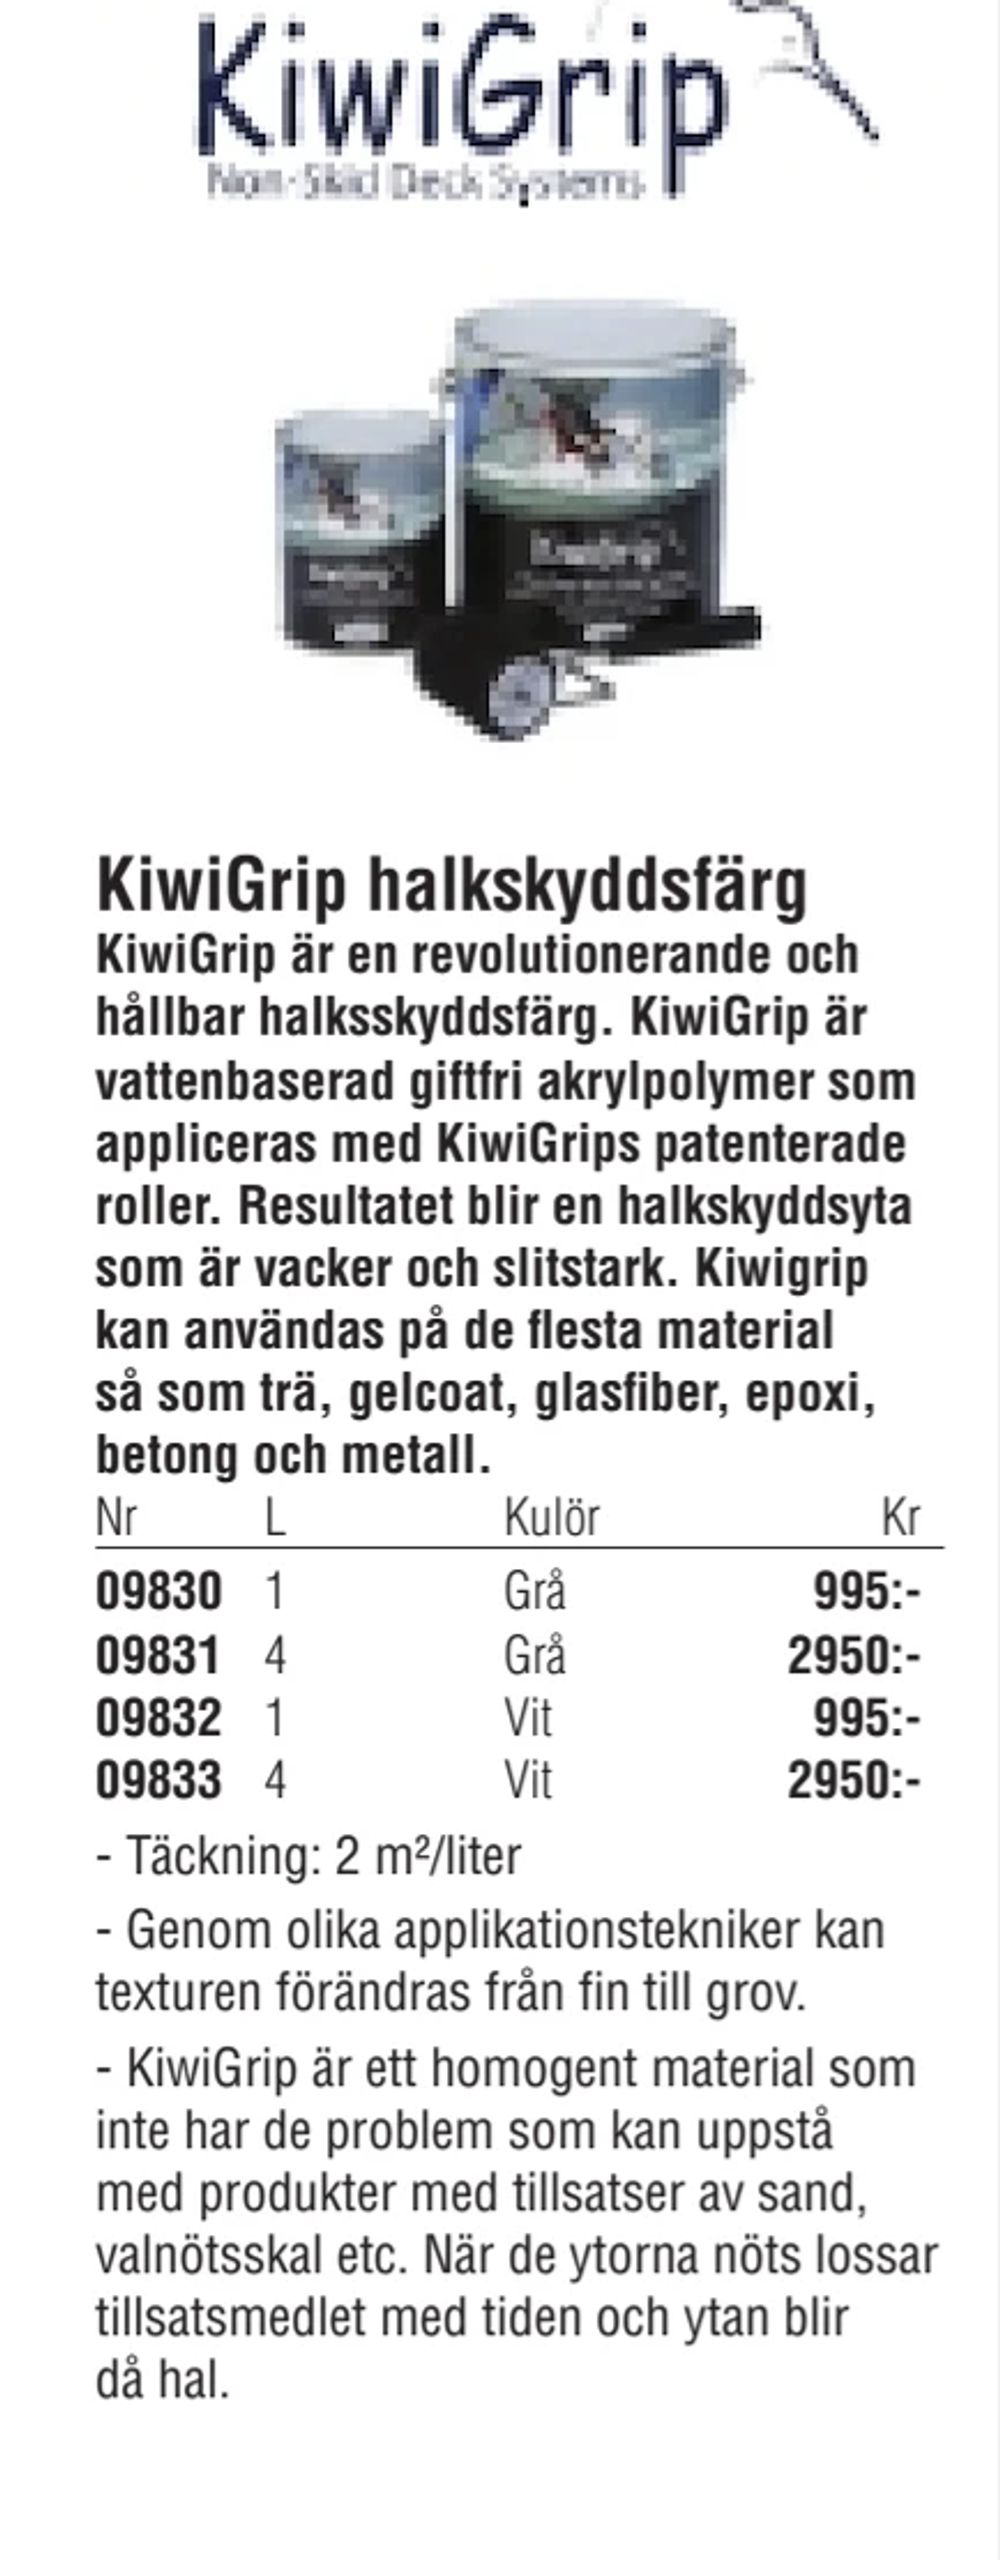 Erbjudanden på KiwiGrip halkskyddsfärg från Erlandsons Brygga för 995 kr